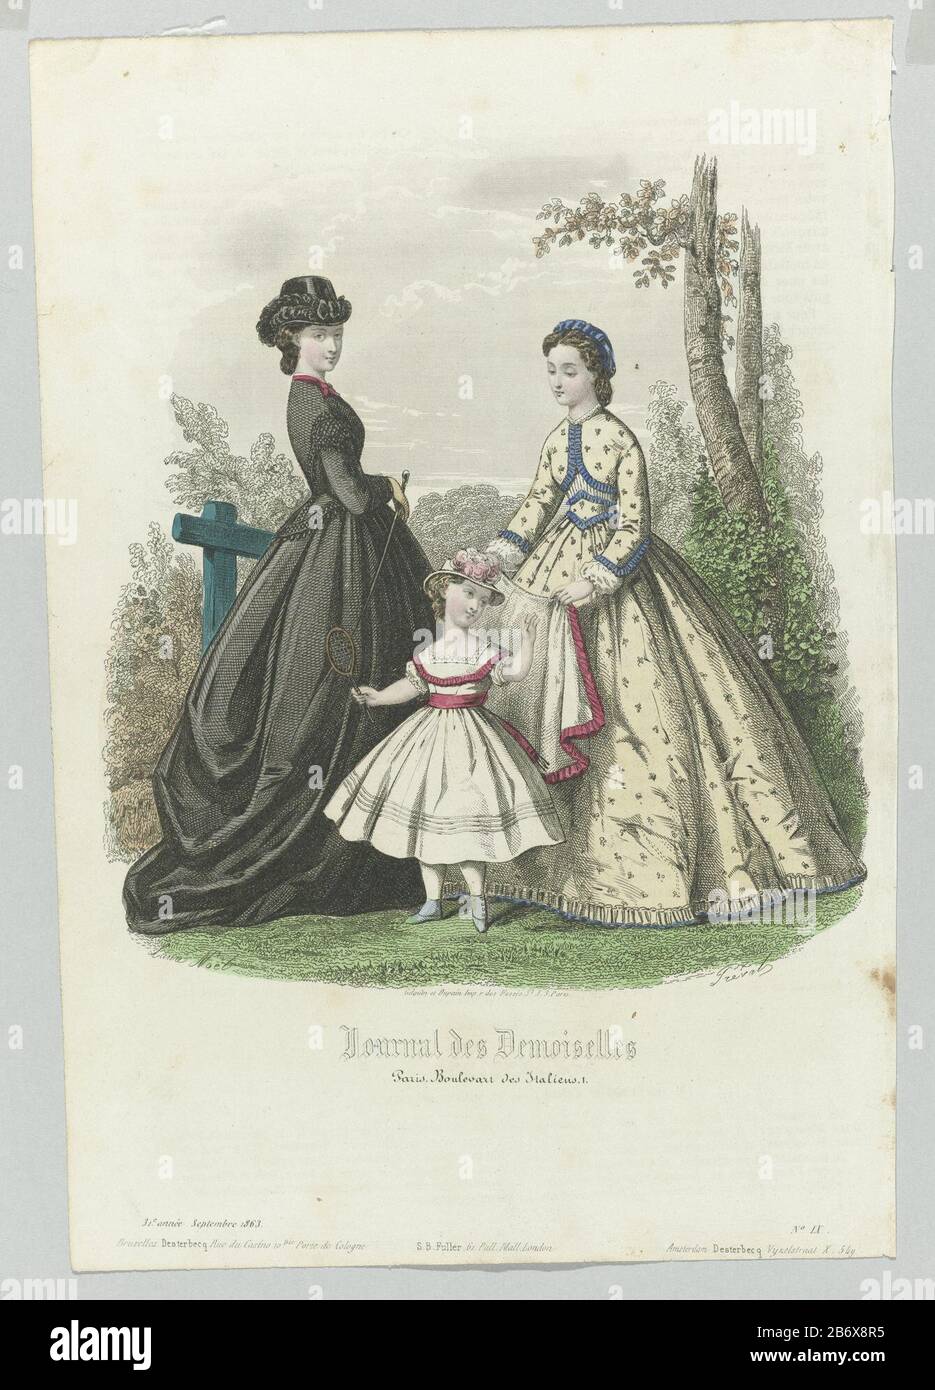 Deux femmes et une fille dans un parc. La femme à gauche porte un costume  amazon (rijkostuum). Fouetter à la main. L'autre femme que la fille aide  une veste (ou cape?) à